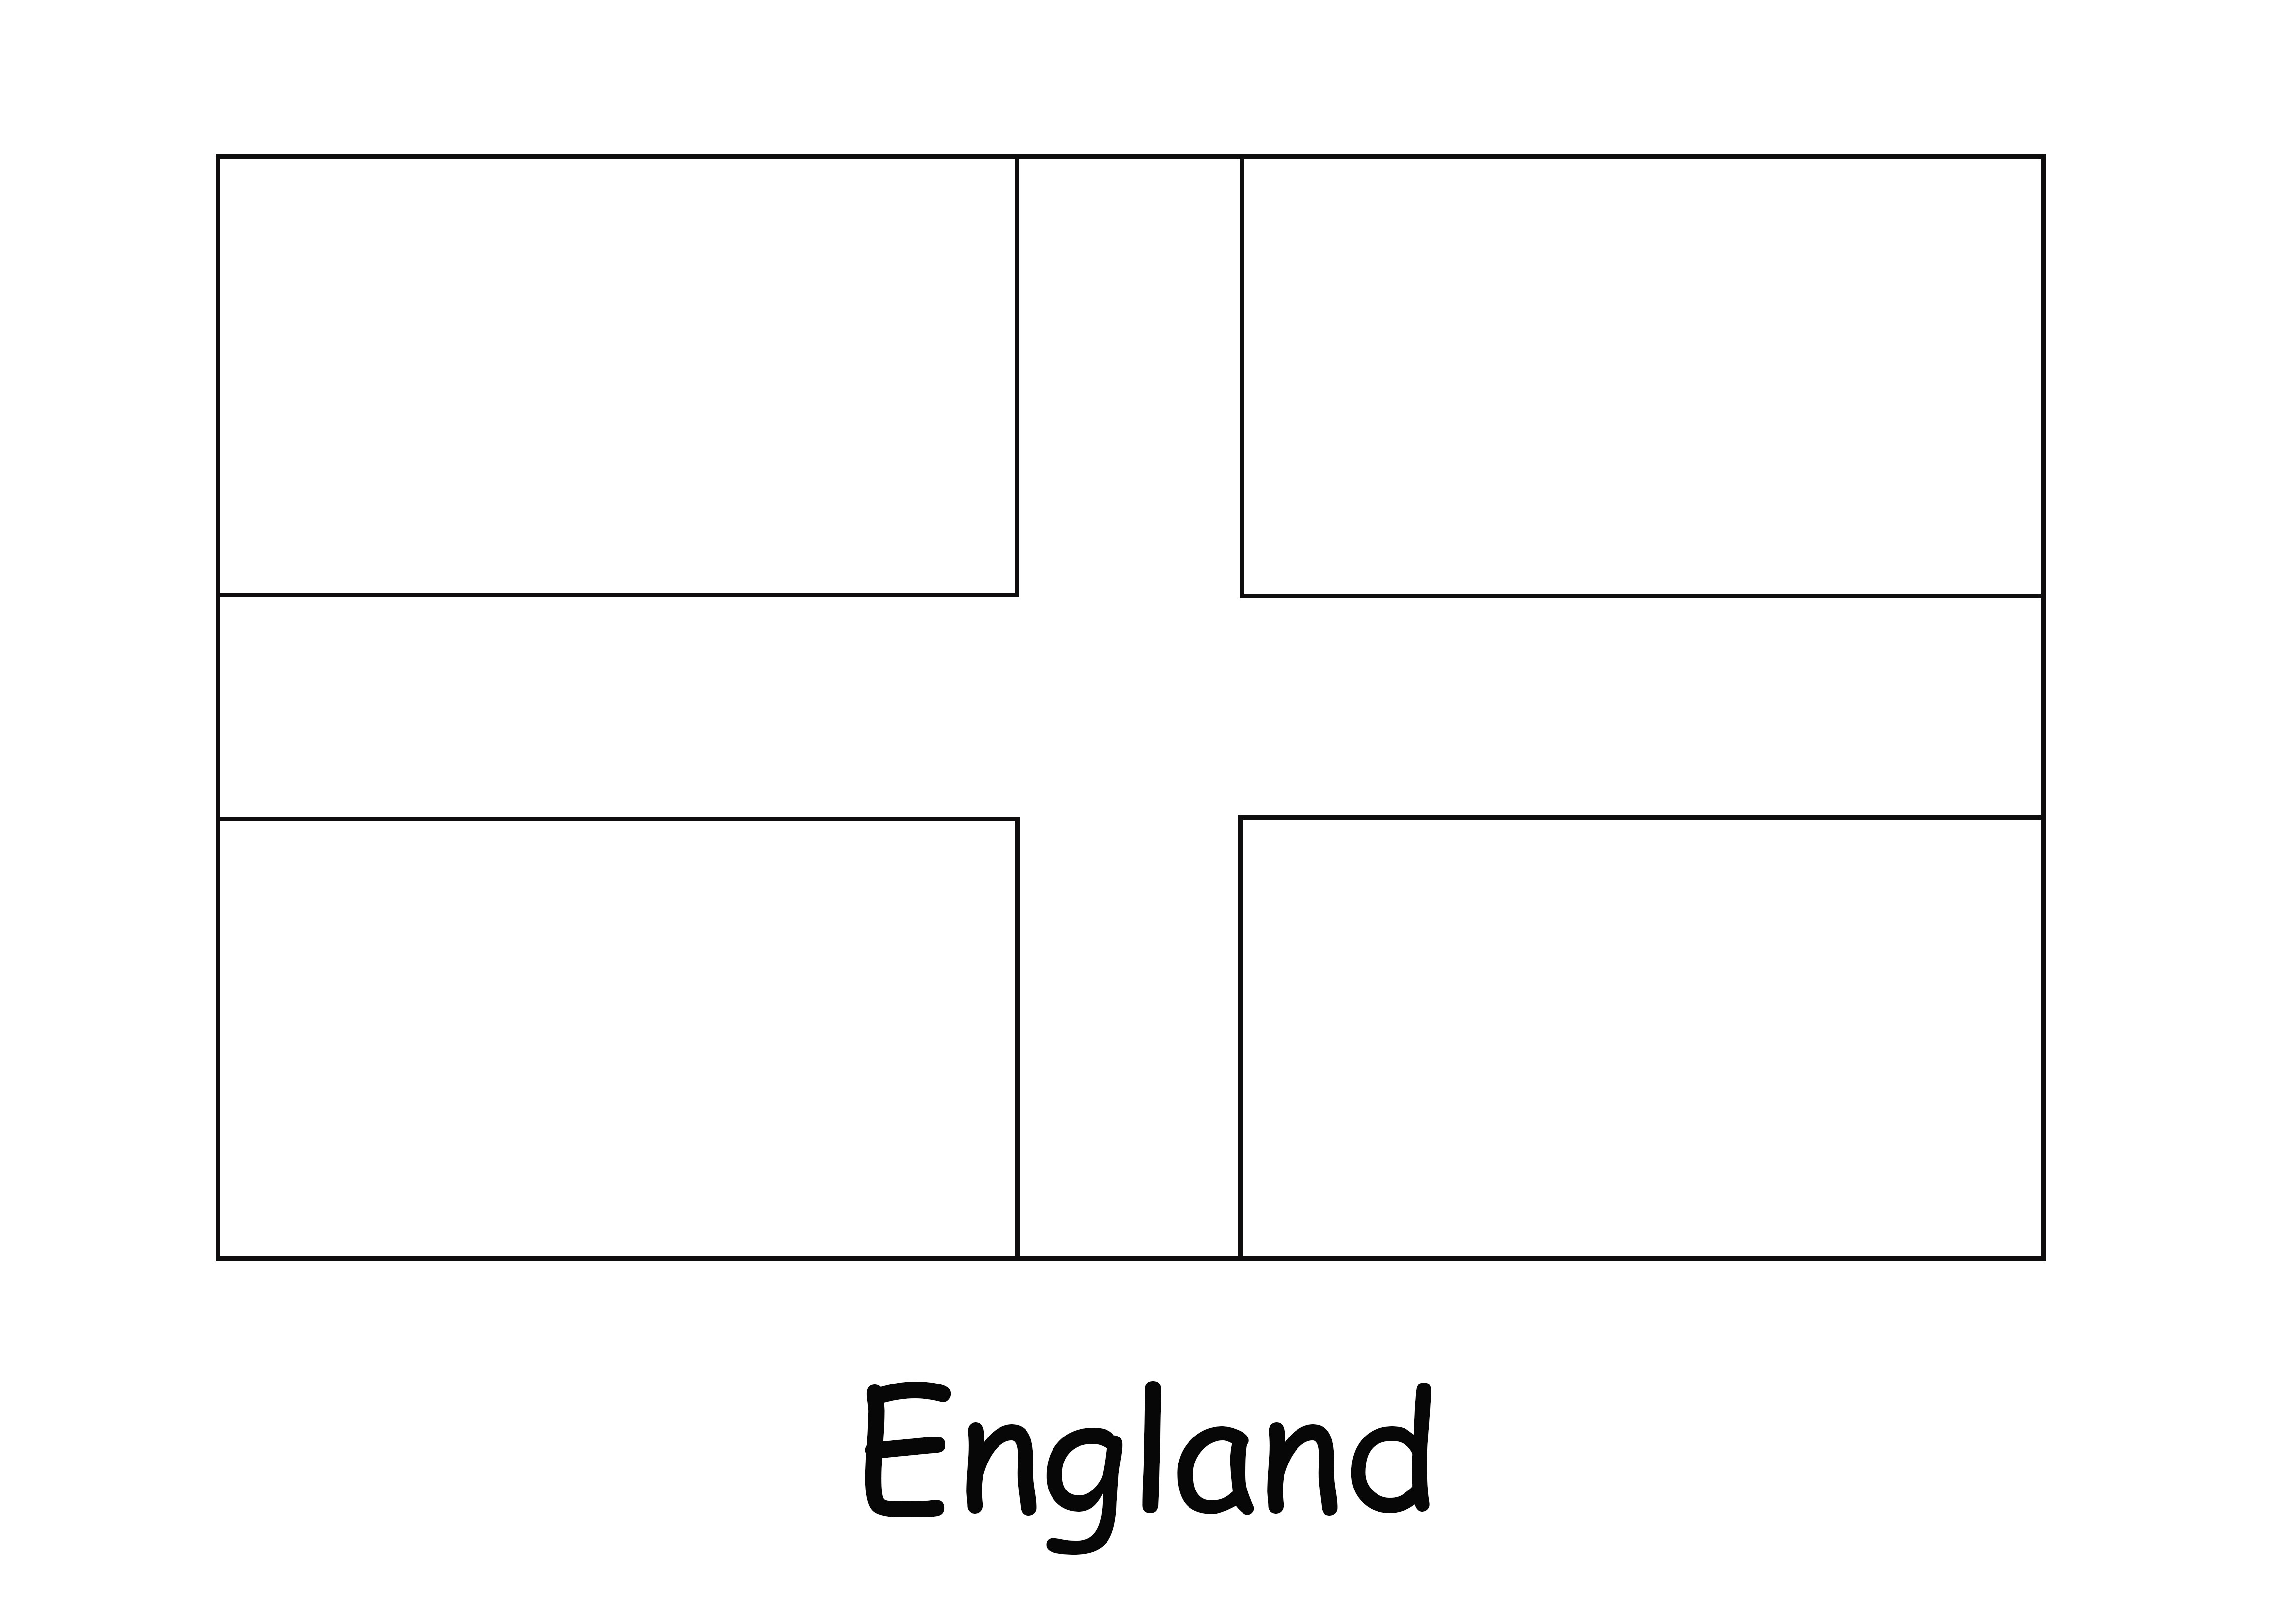 Çocuklar için boyaması ve yazdırması çok kolay İngiltere Bayrağı resmi